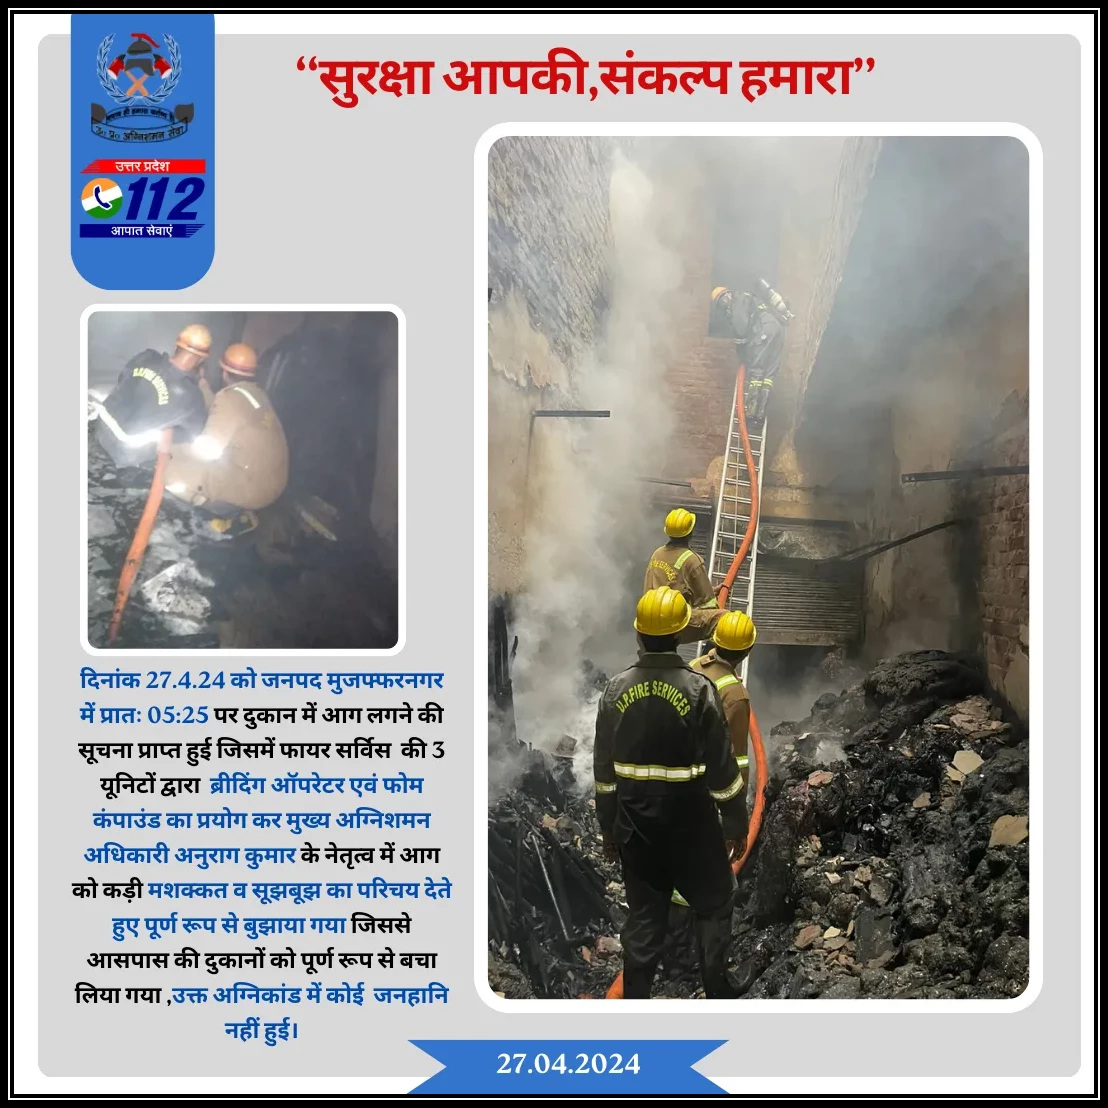 दिनांक 27.04.24 को जनपद मुजफ्फरनगर में प्रातः 05:25 पर दुकान में आग लगने की सूचना प्राप्त हुई जिसमें फायर सर्विस द्वारा ब्रीदिंग ऑपरेटर एवं फोम कंपाउंड का प्रयोग कर आग को कड़ी मशक्कत व सूझबूझ के साथ बुझाया गया, जिससे आसपास की दुकानों को पूर्ण रूप से बचा लिया गया ।@FireSarviceMZN